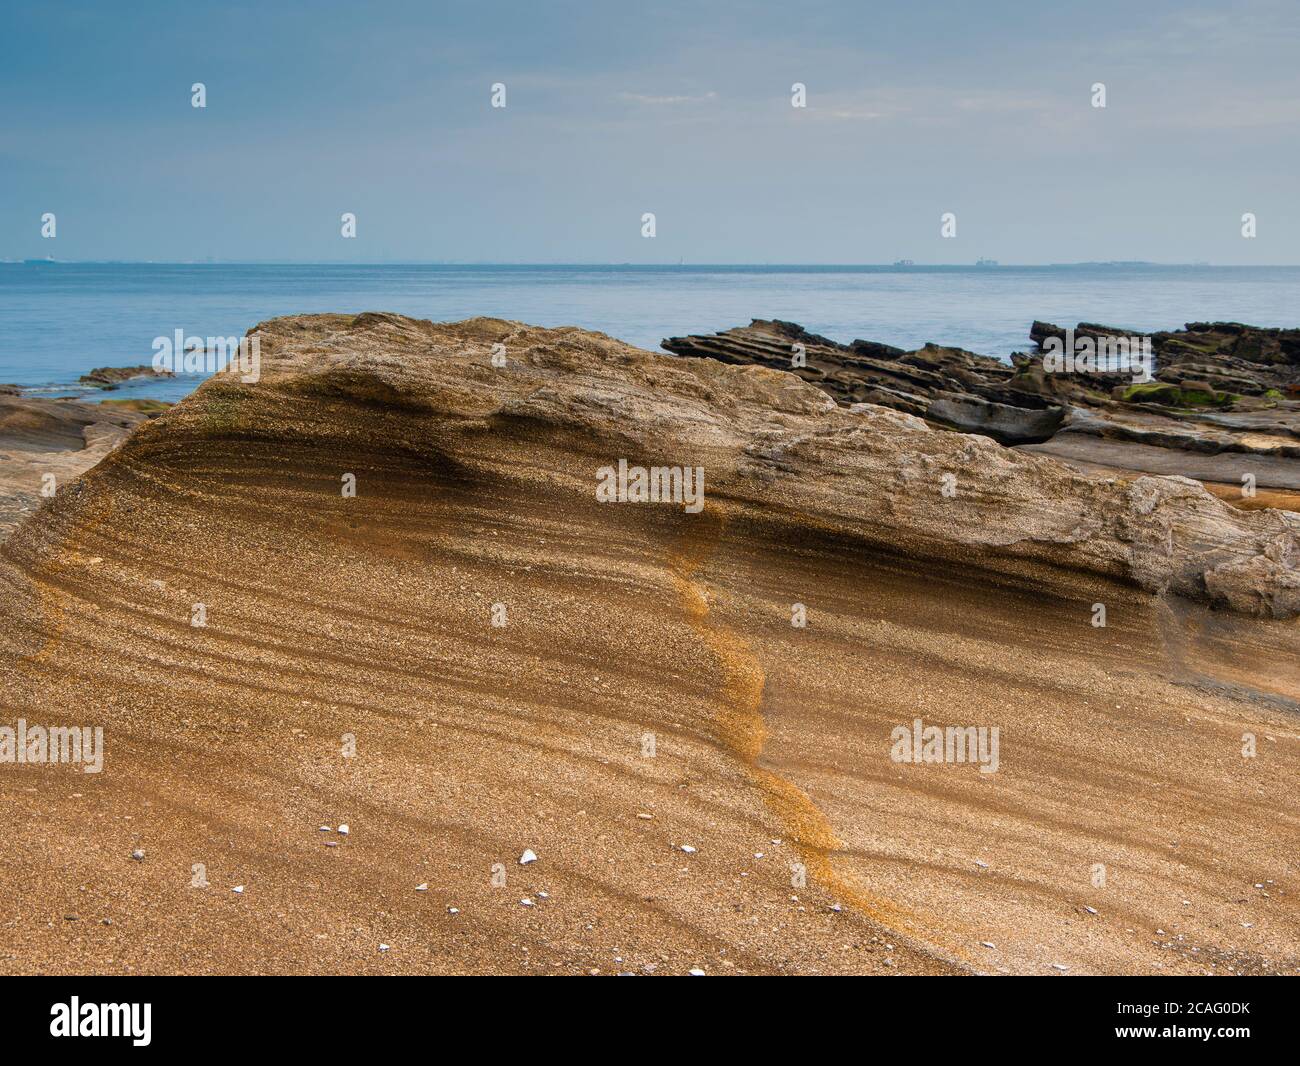 Questa pietra arenaria faceva parte di uno strato formatosi su un fondo marino profondo milioni di anni fa, raggiungendo la superficie solo circa 500,000 yea Foto Stock